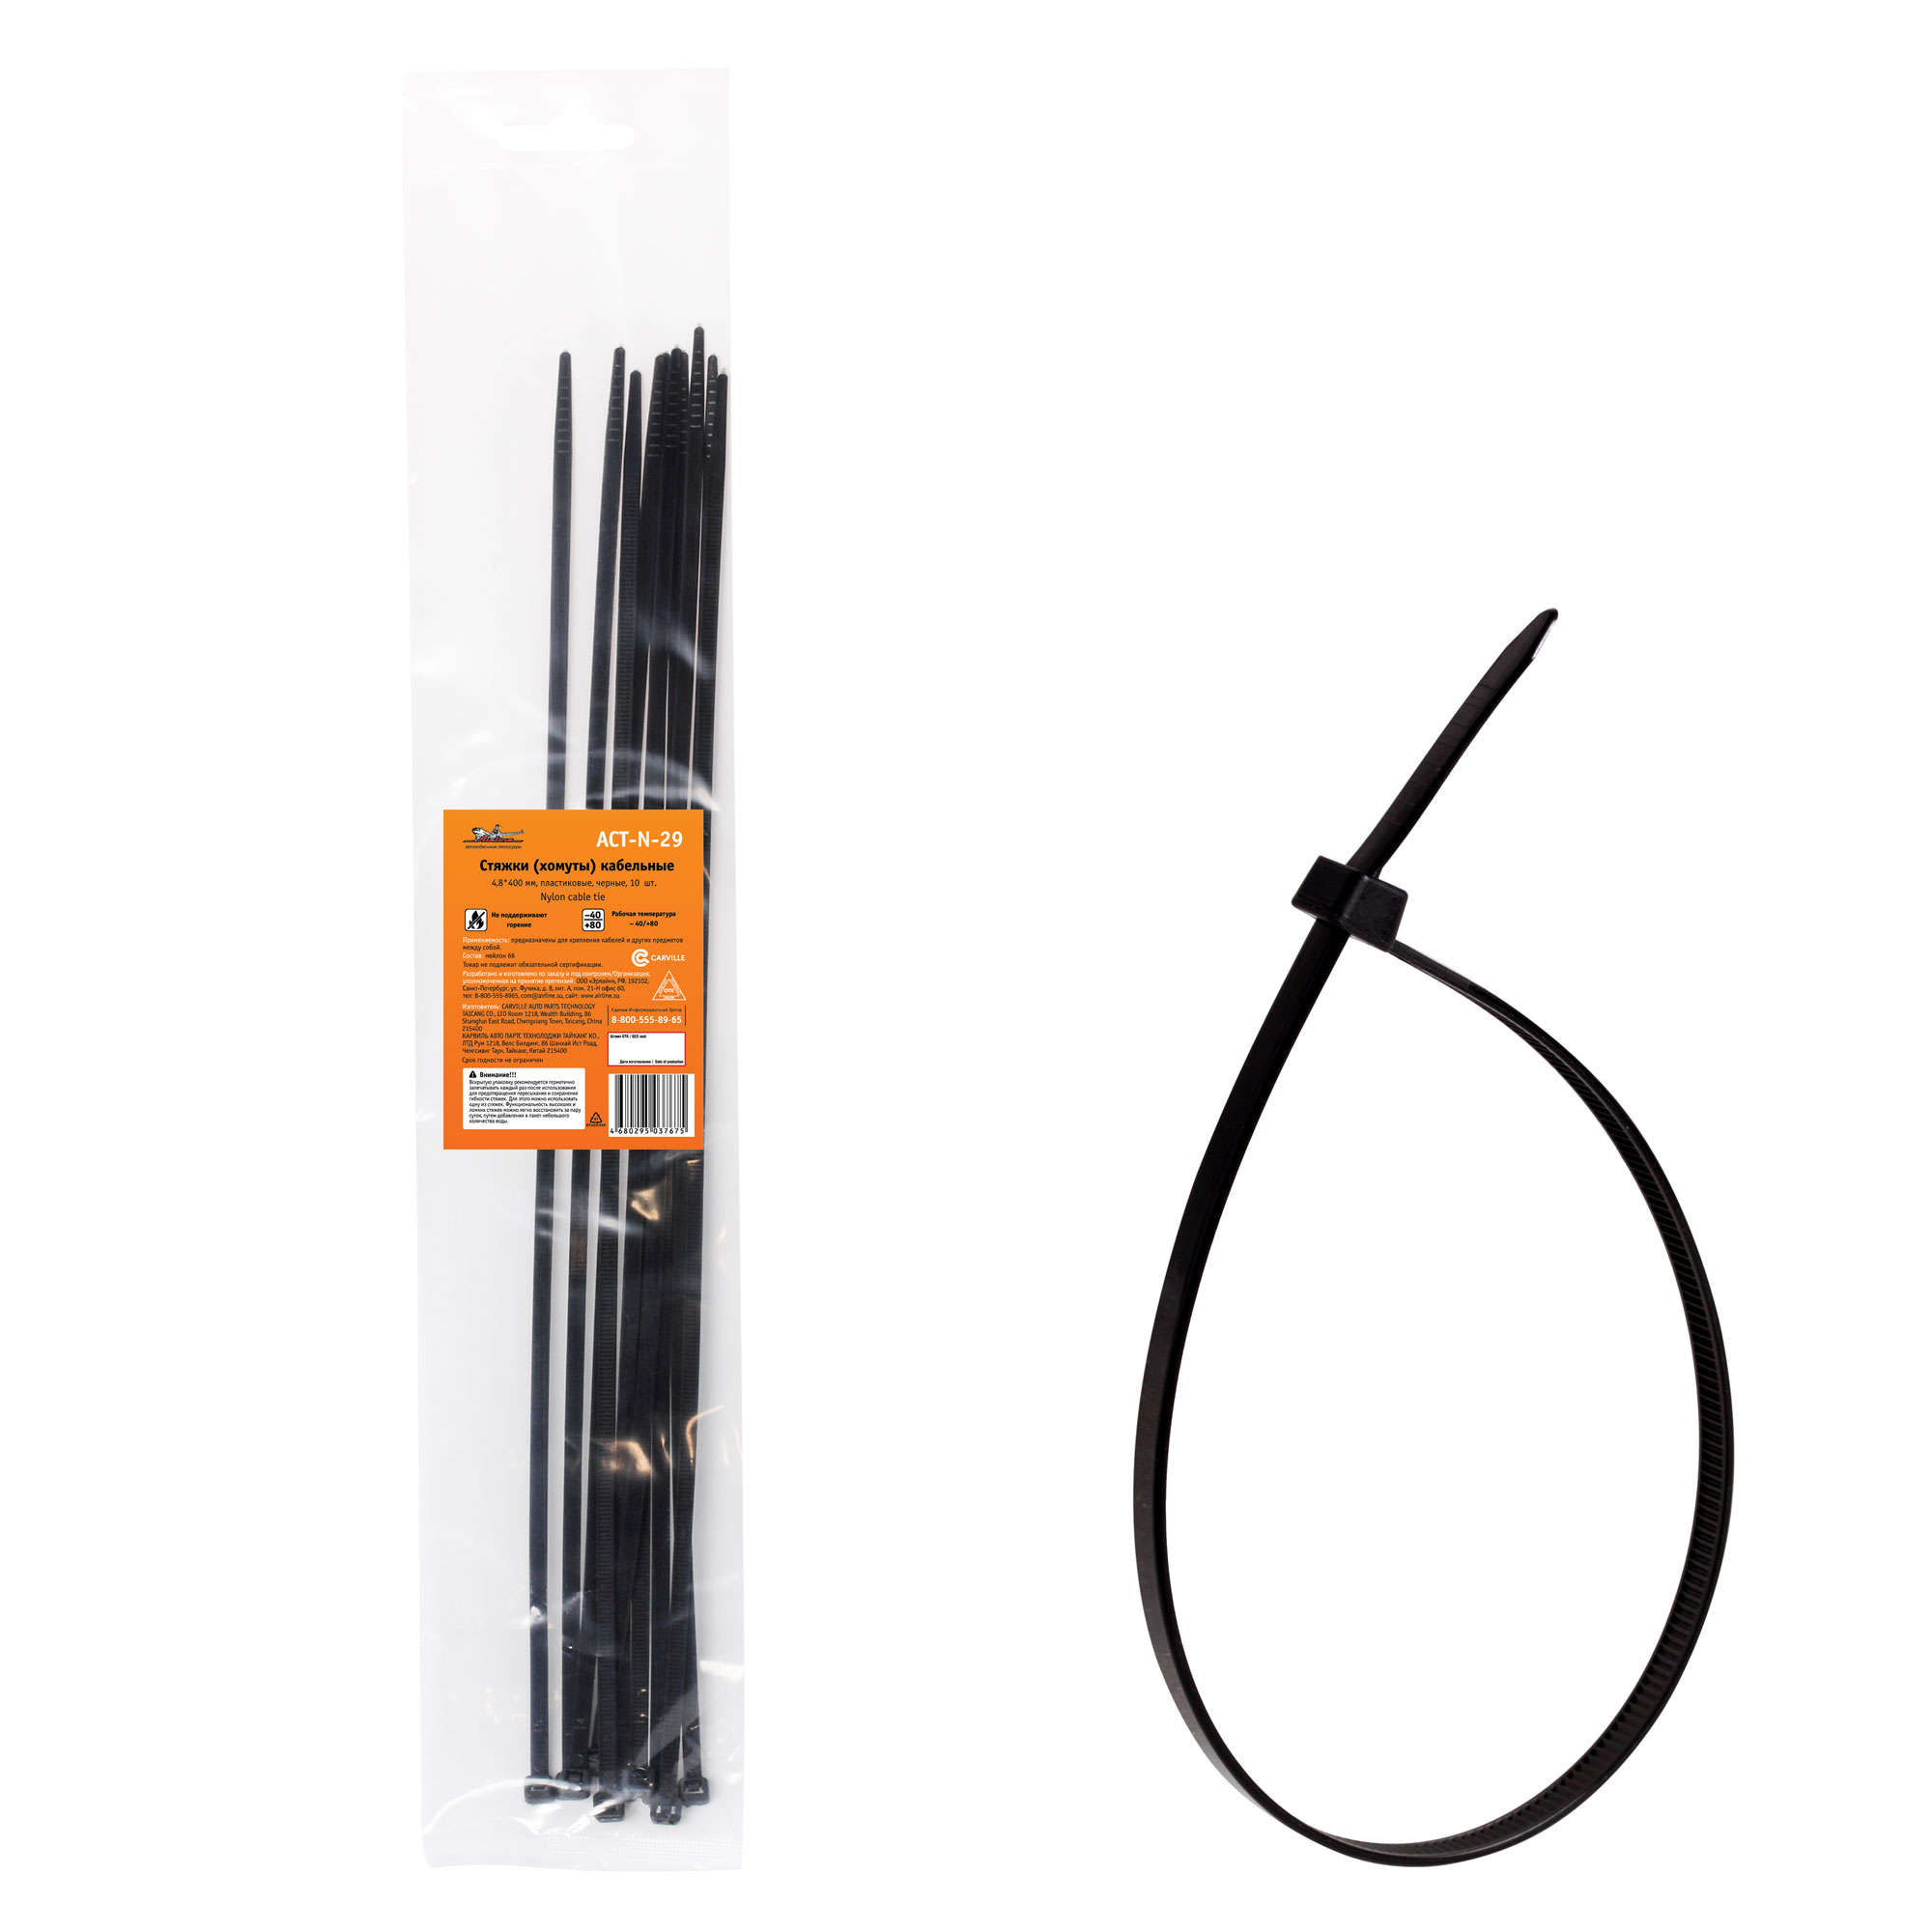 Стяжки (хомуты) кабельные 4,8*400 мм, пластиковые, черные, 10 шт. - AIRLINE ACT-N-29